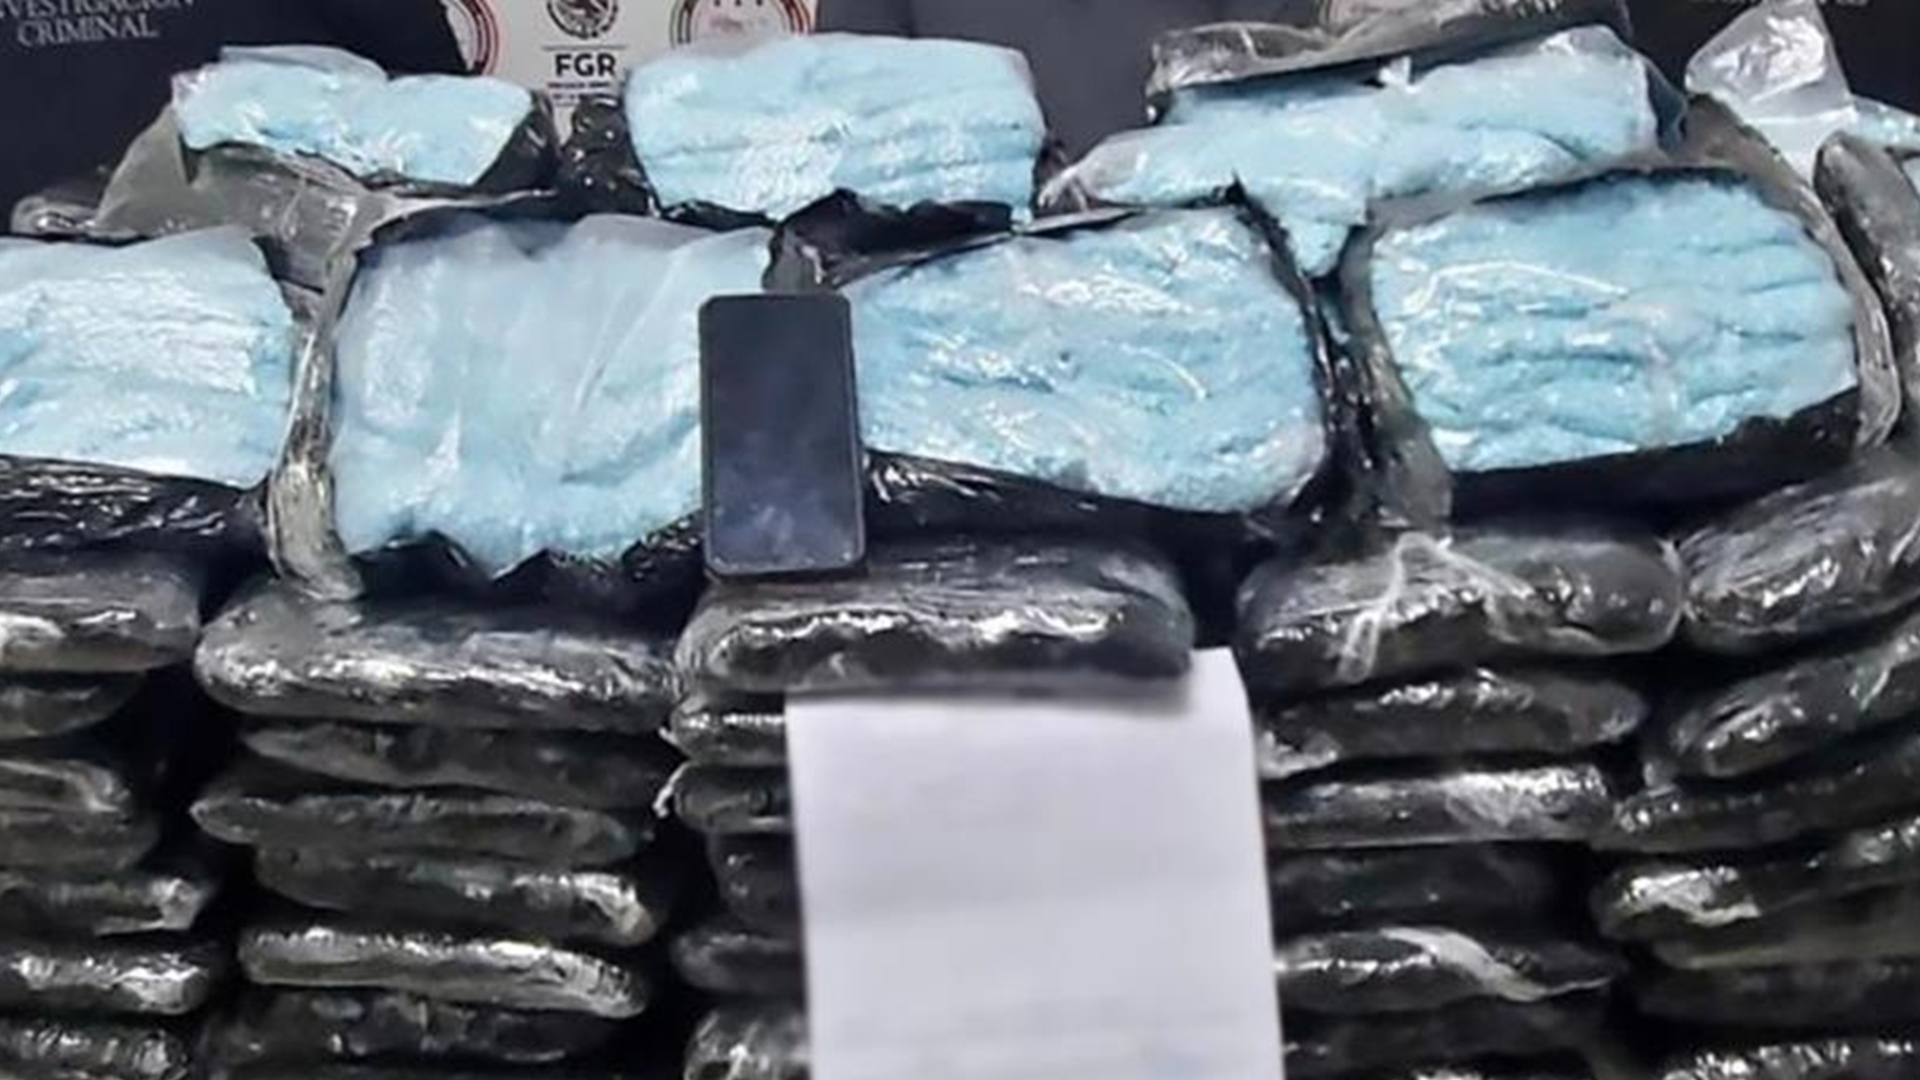 Decomisaron de 2 millones de pastillas de fentanilo en territorio del Cártel de Sinaloa